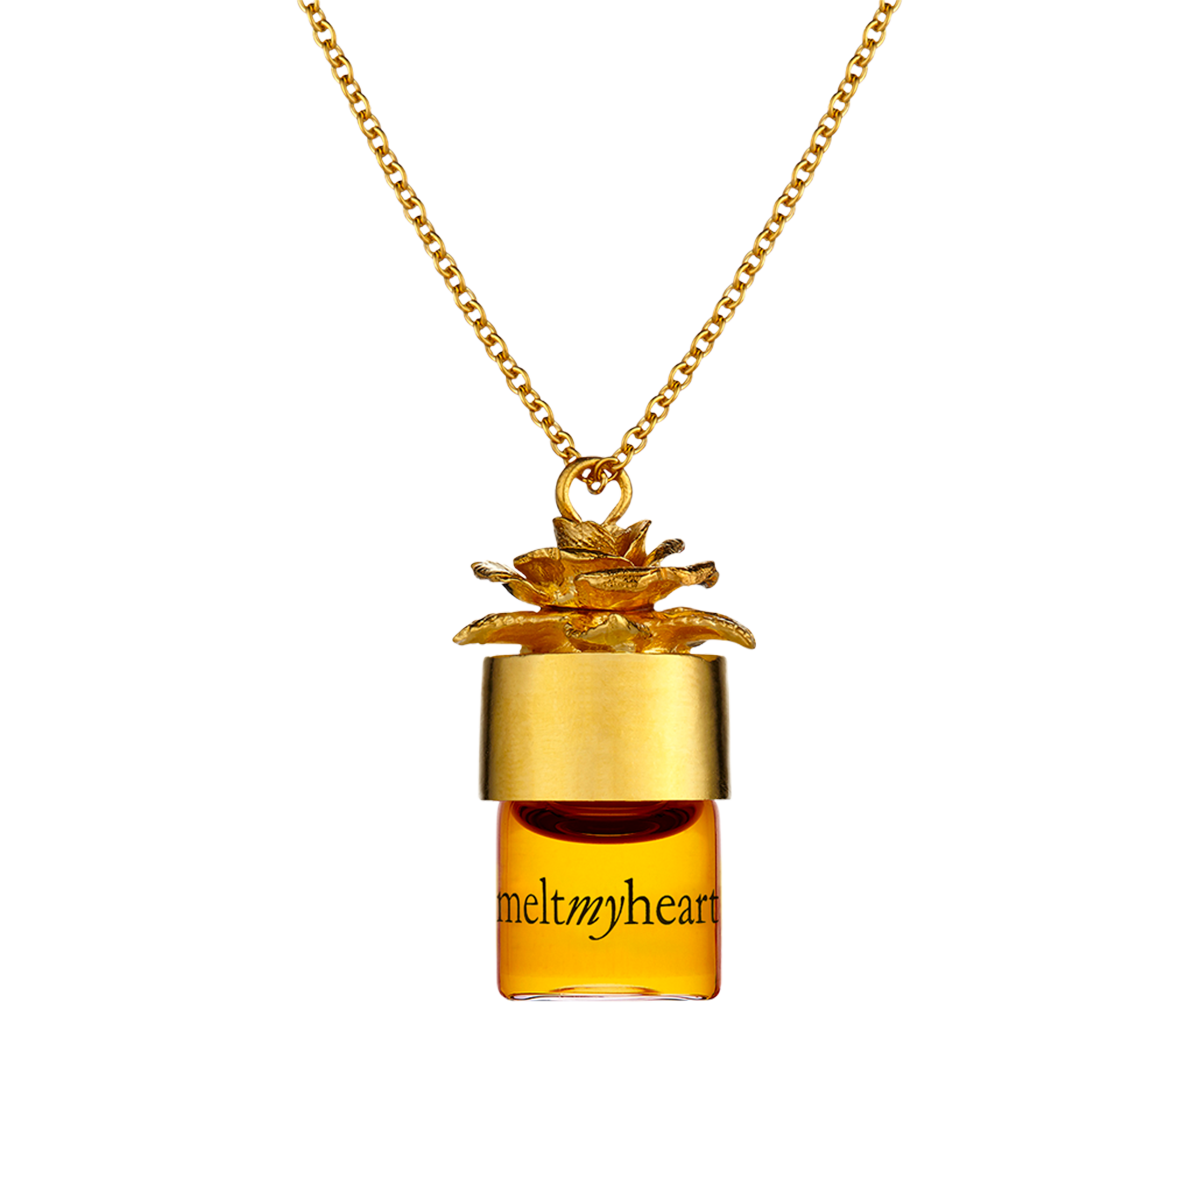 Strangelove - Meltmyheart oil 24" potion pendant